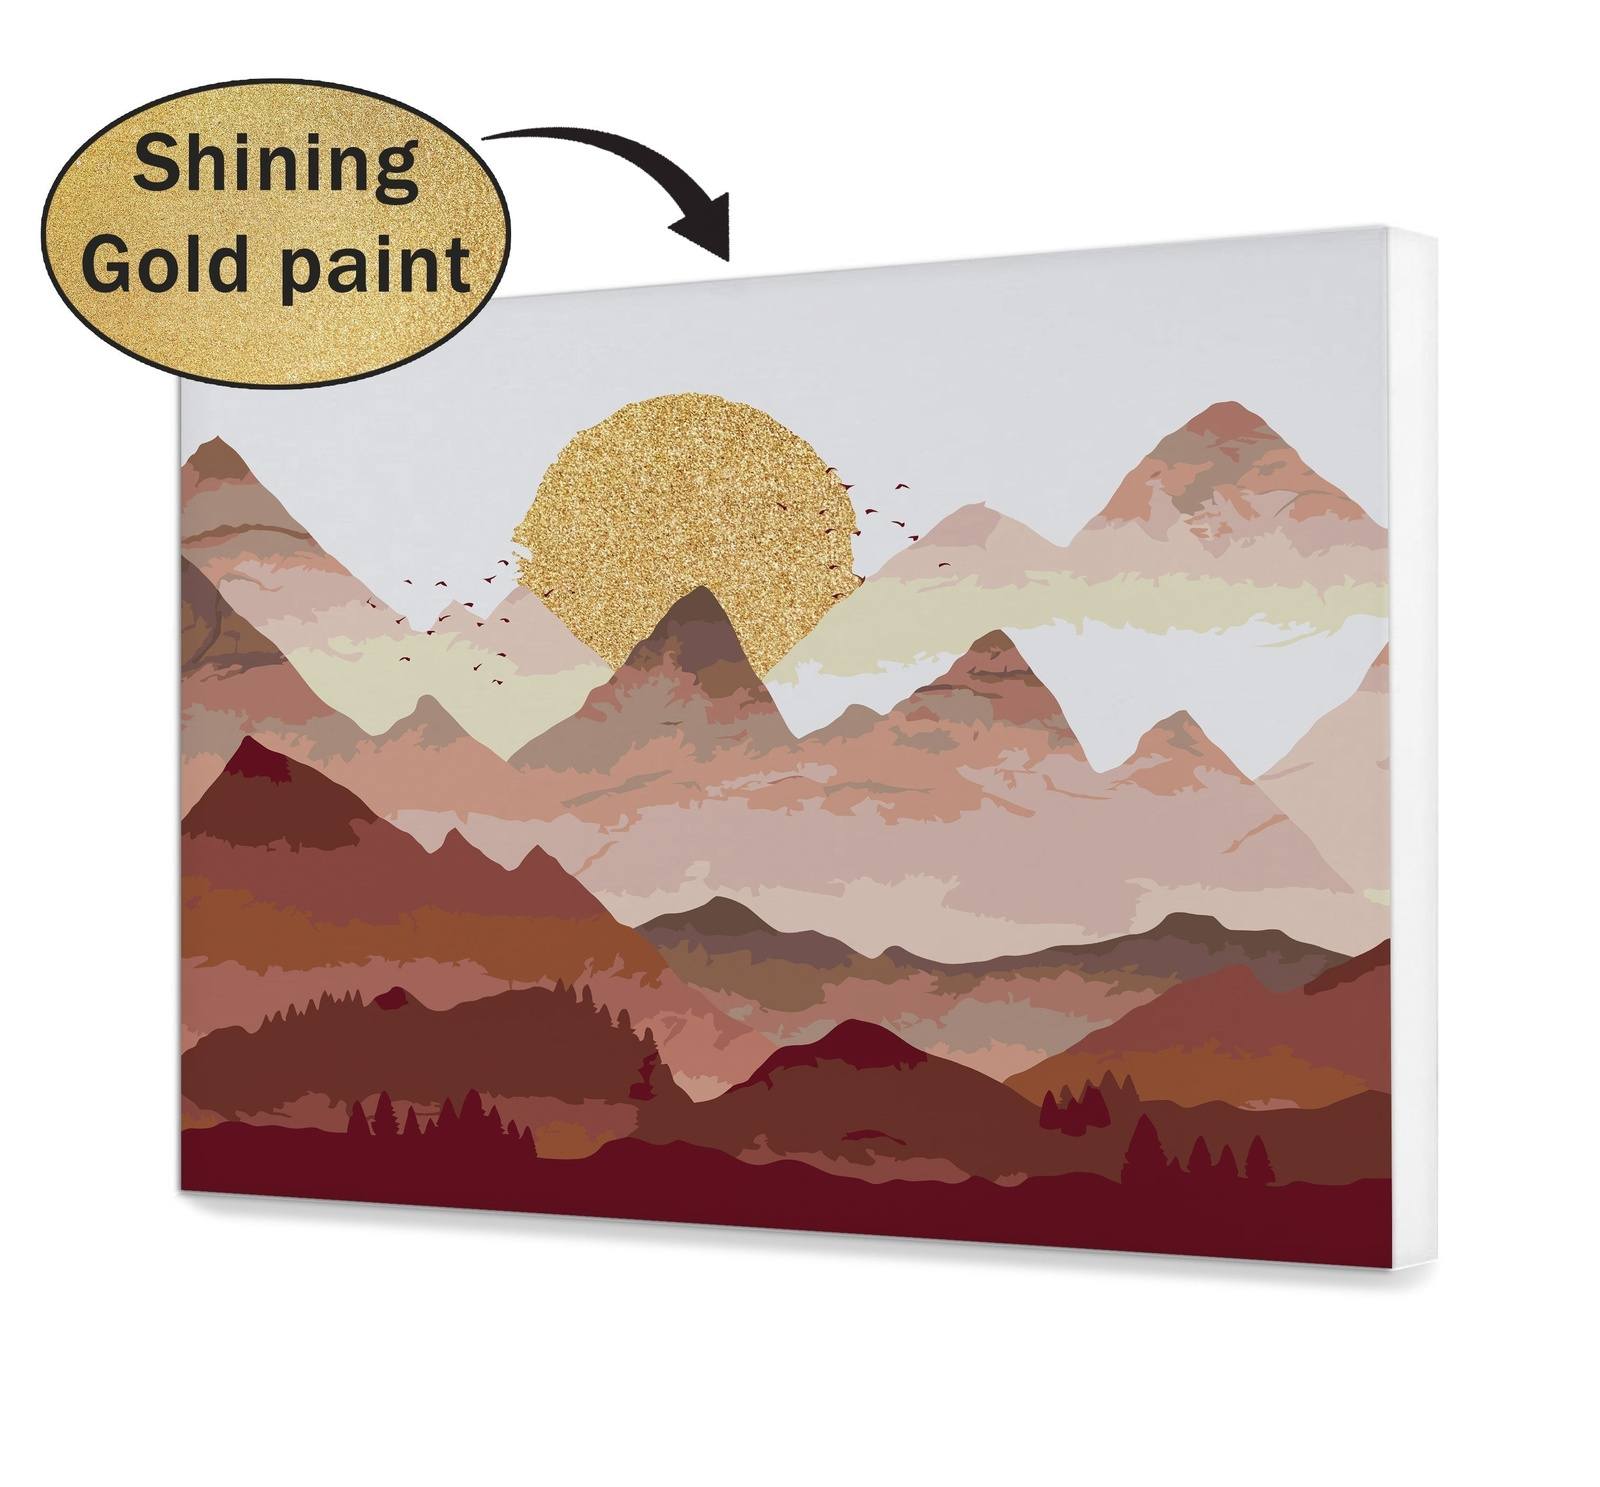 Az arany nap a hegyekben (PC0438)